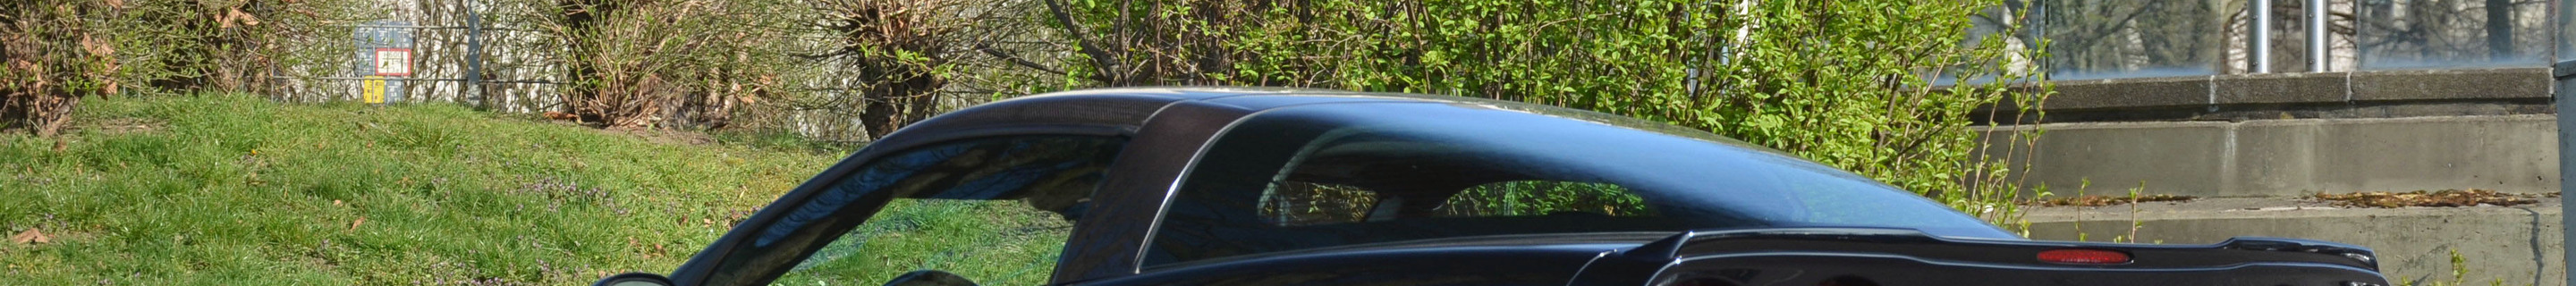 Chevrolet Corvette ZR1